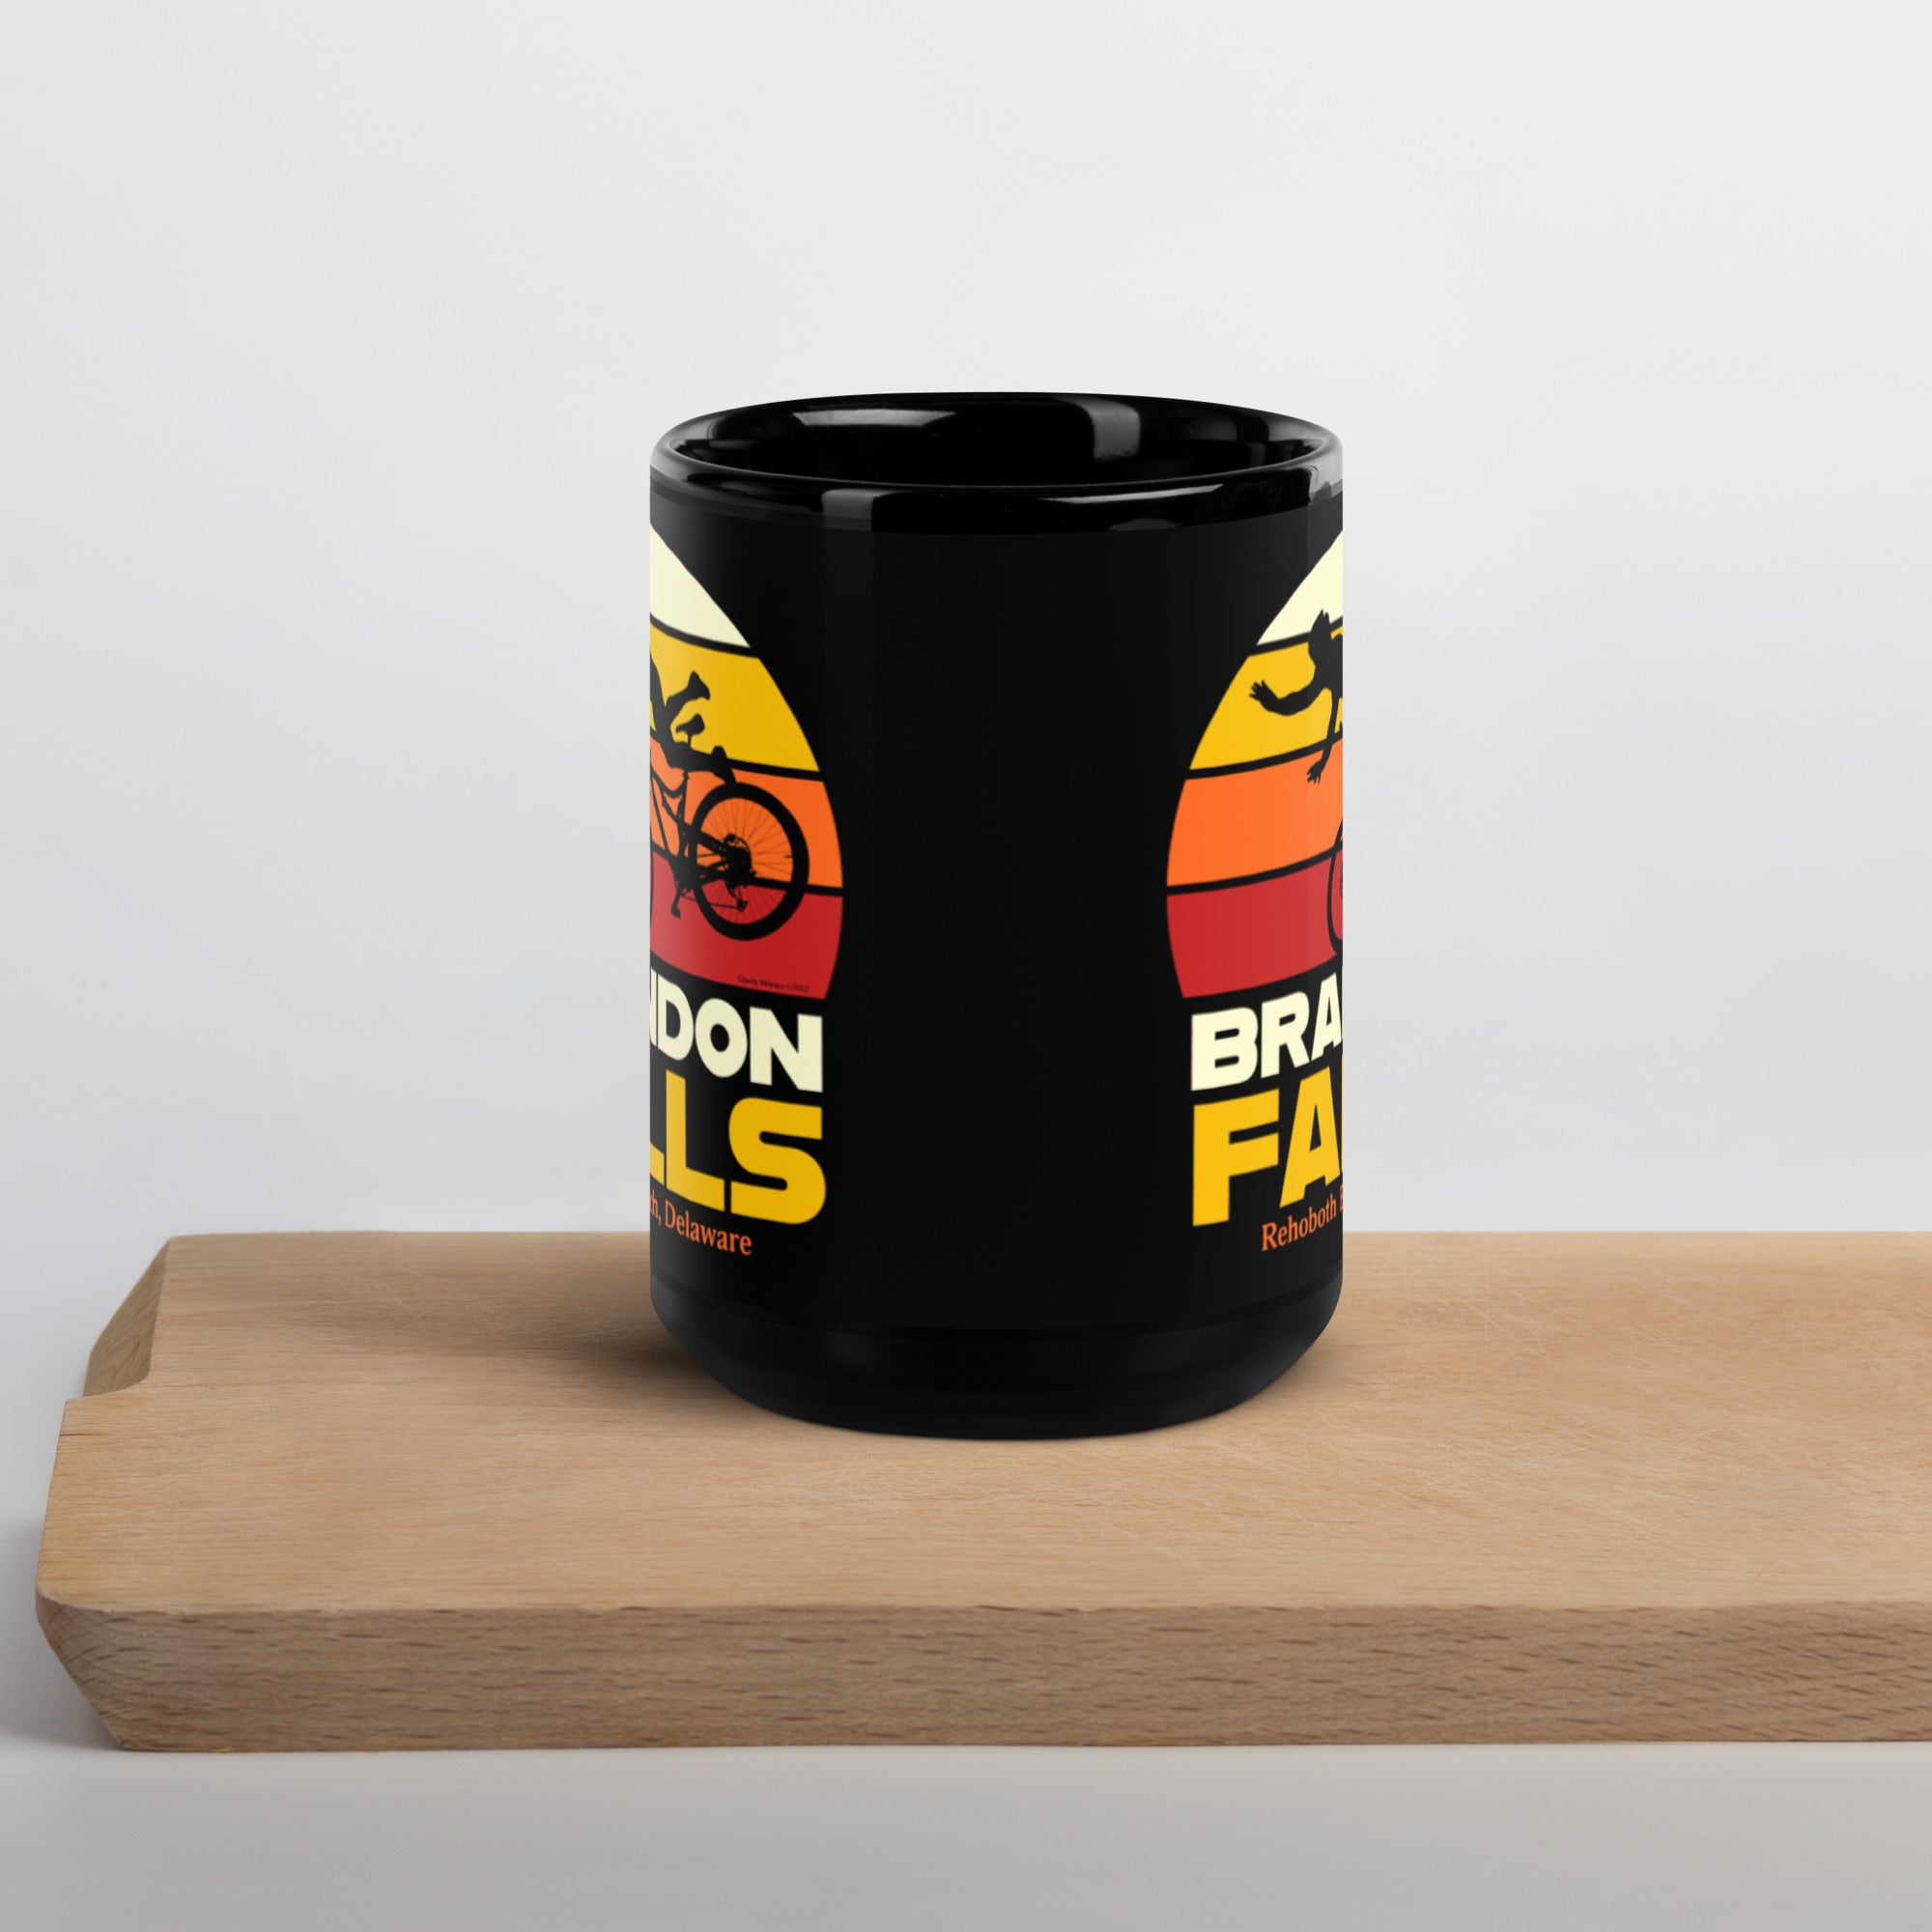 Brandon Falls Coffee Mug